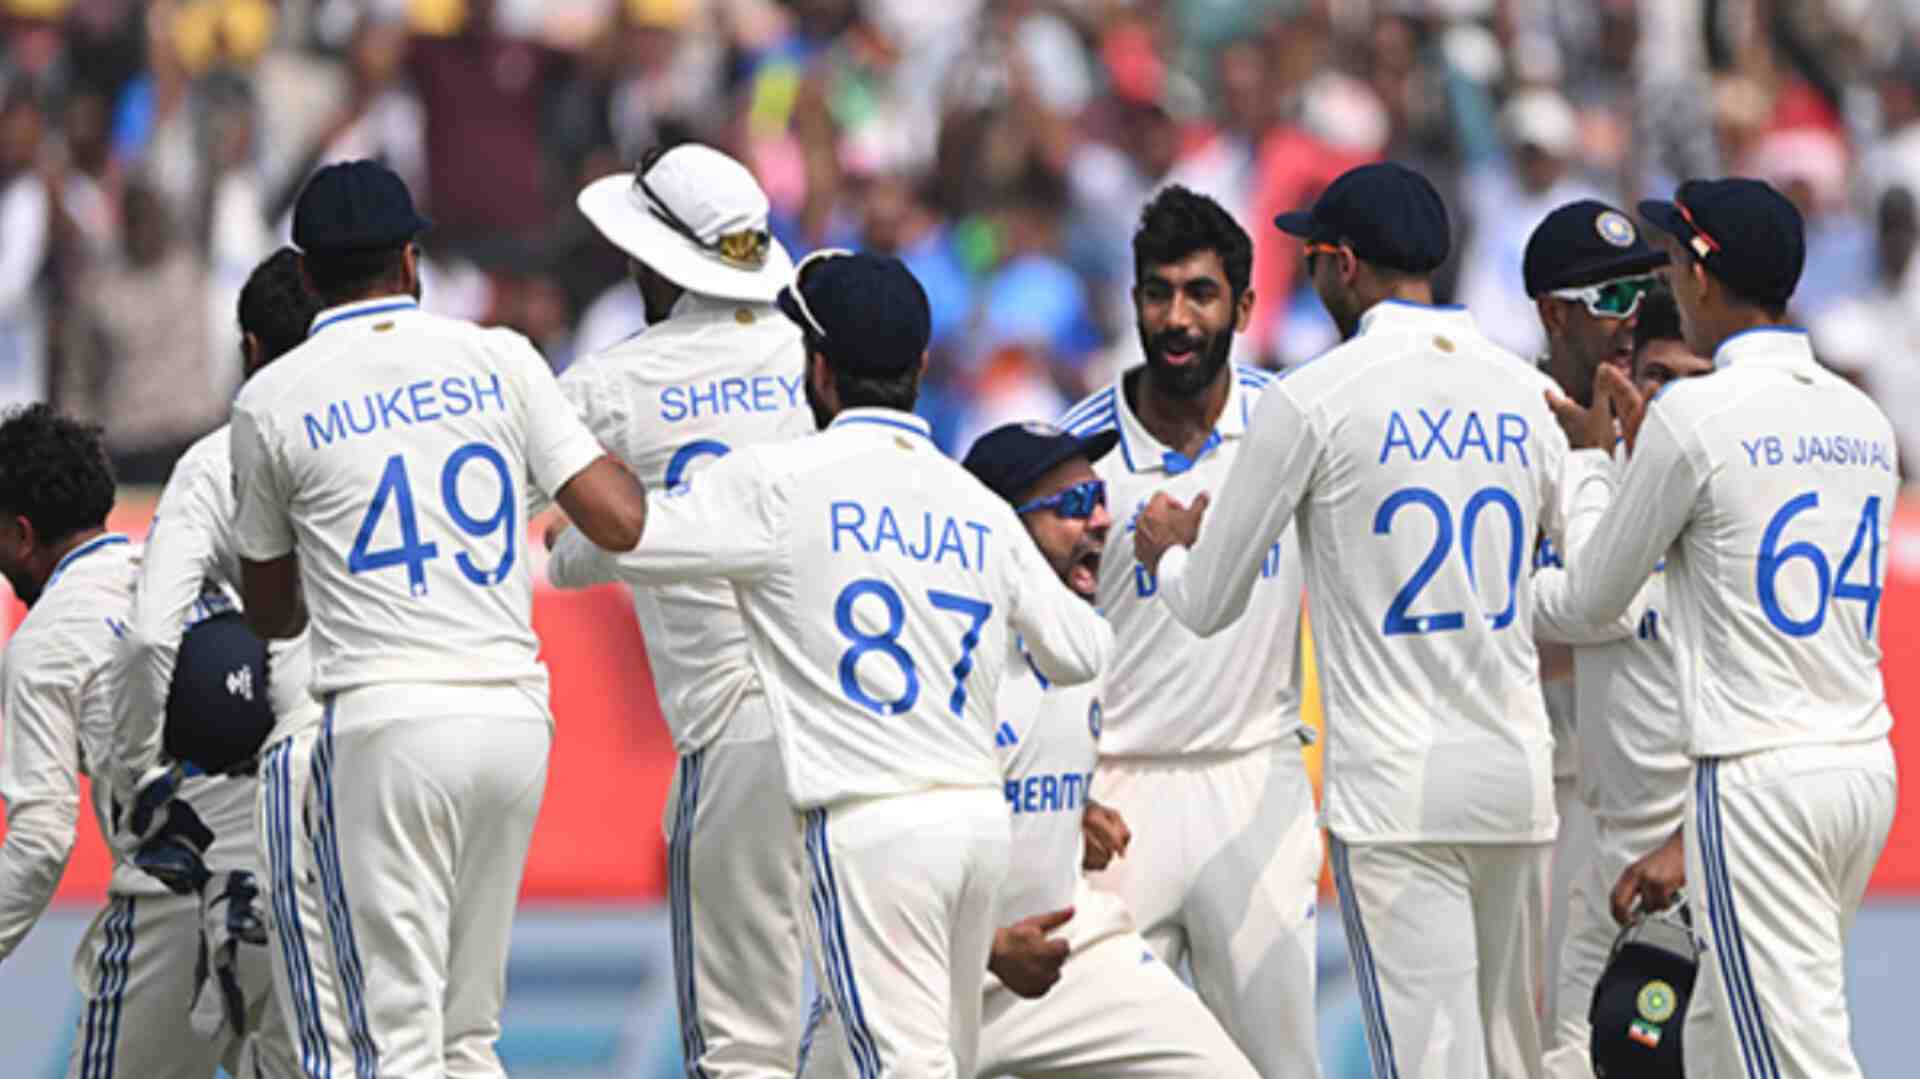 विश्व टेस्ट चैंपियनशिप पॉइंट्स टेबल में शीर्ष स्थान पर पहुंचा भारत